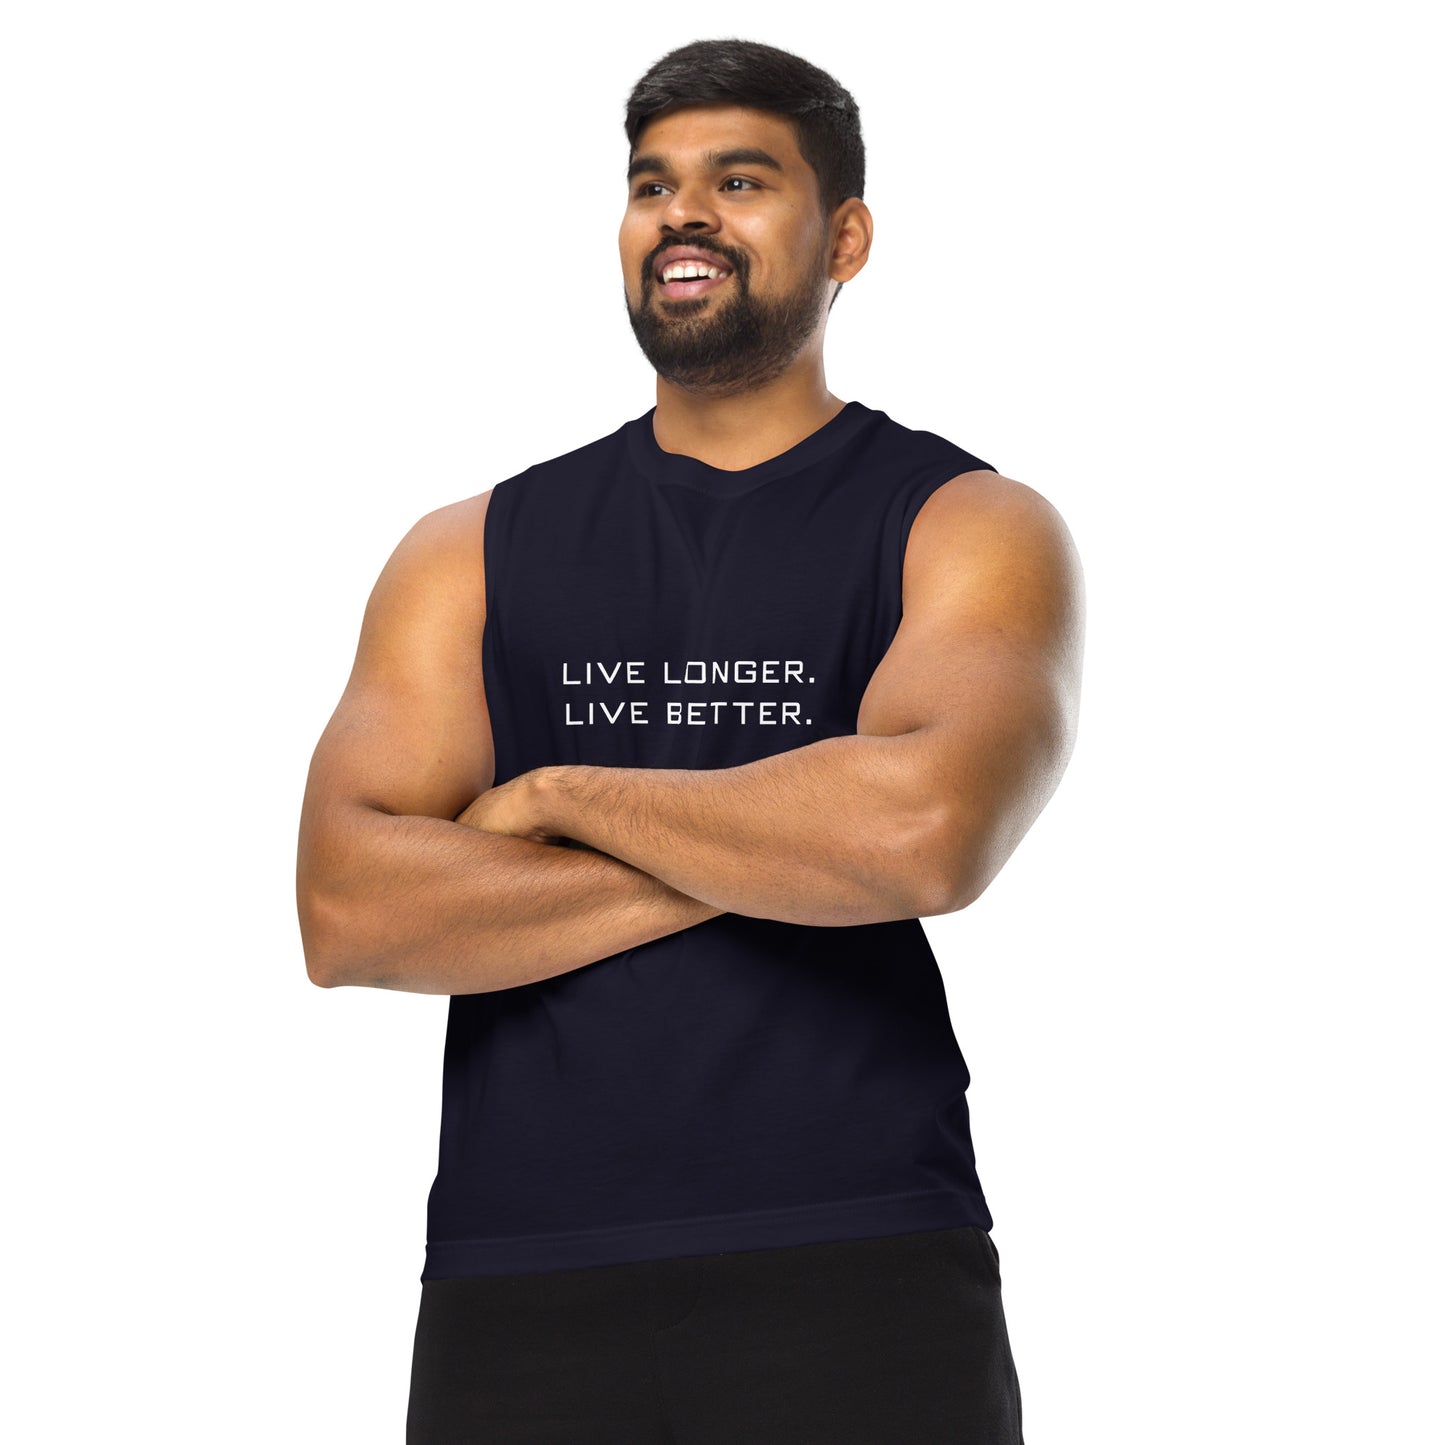 Muscle Shirt For Men - Live Longer Live Better